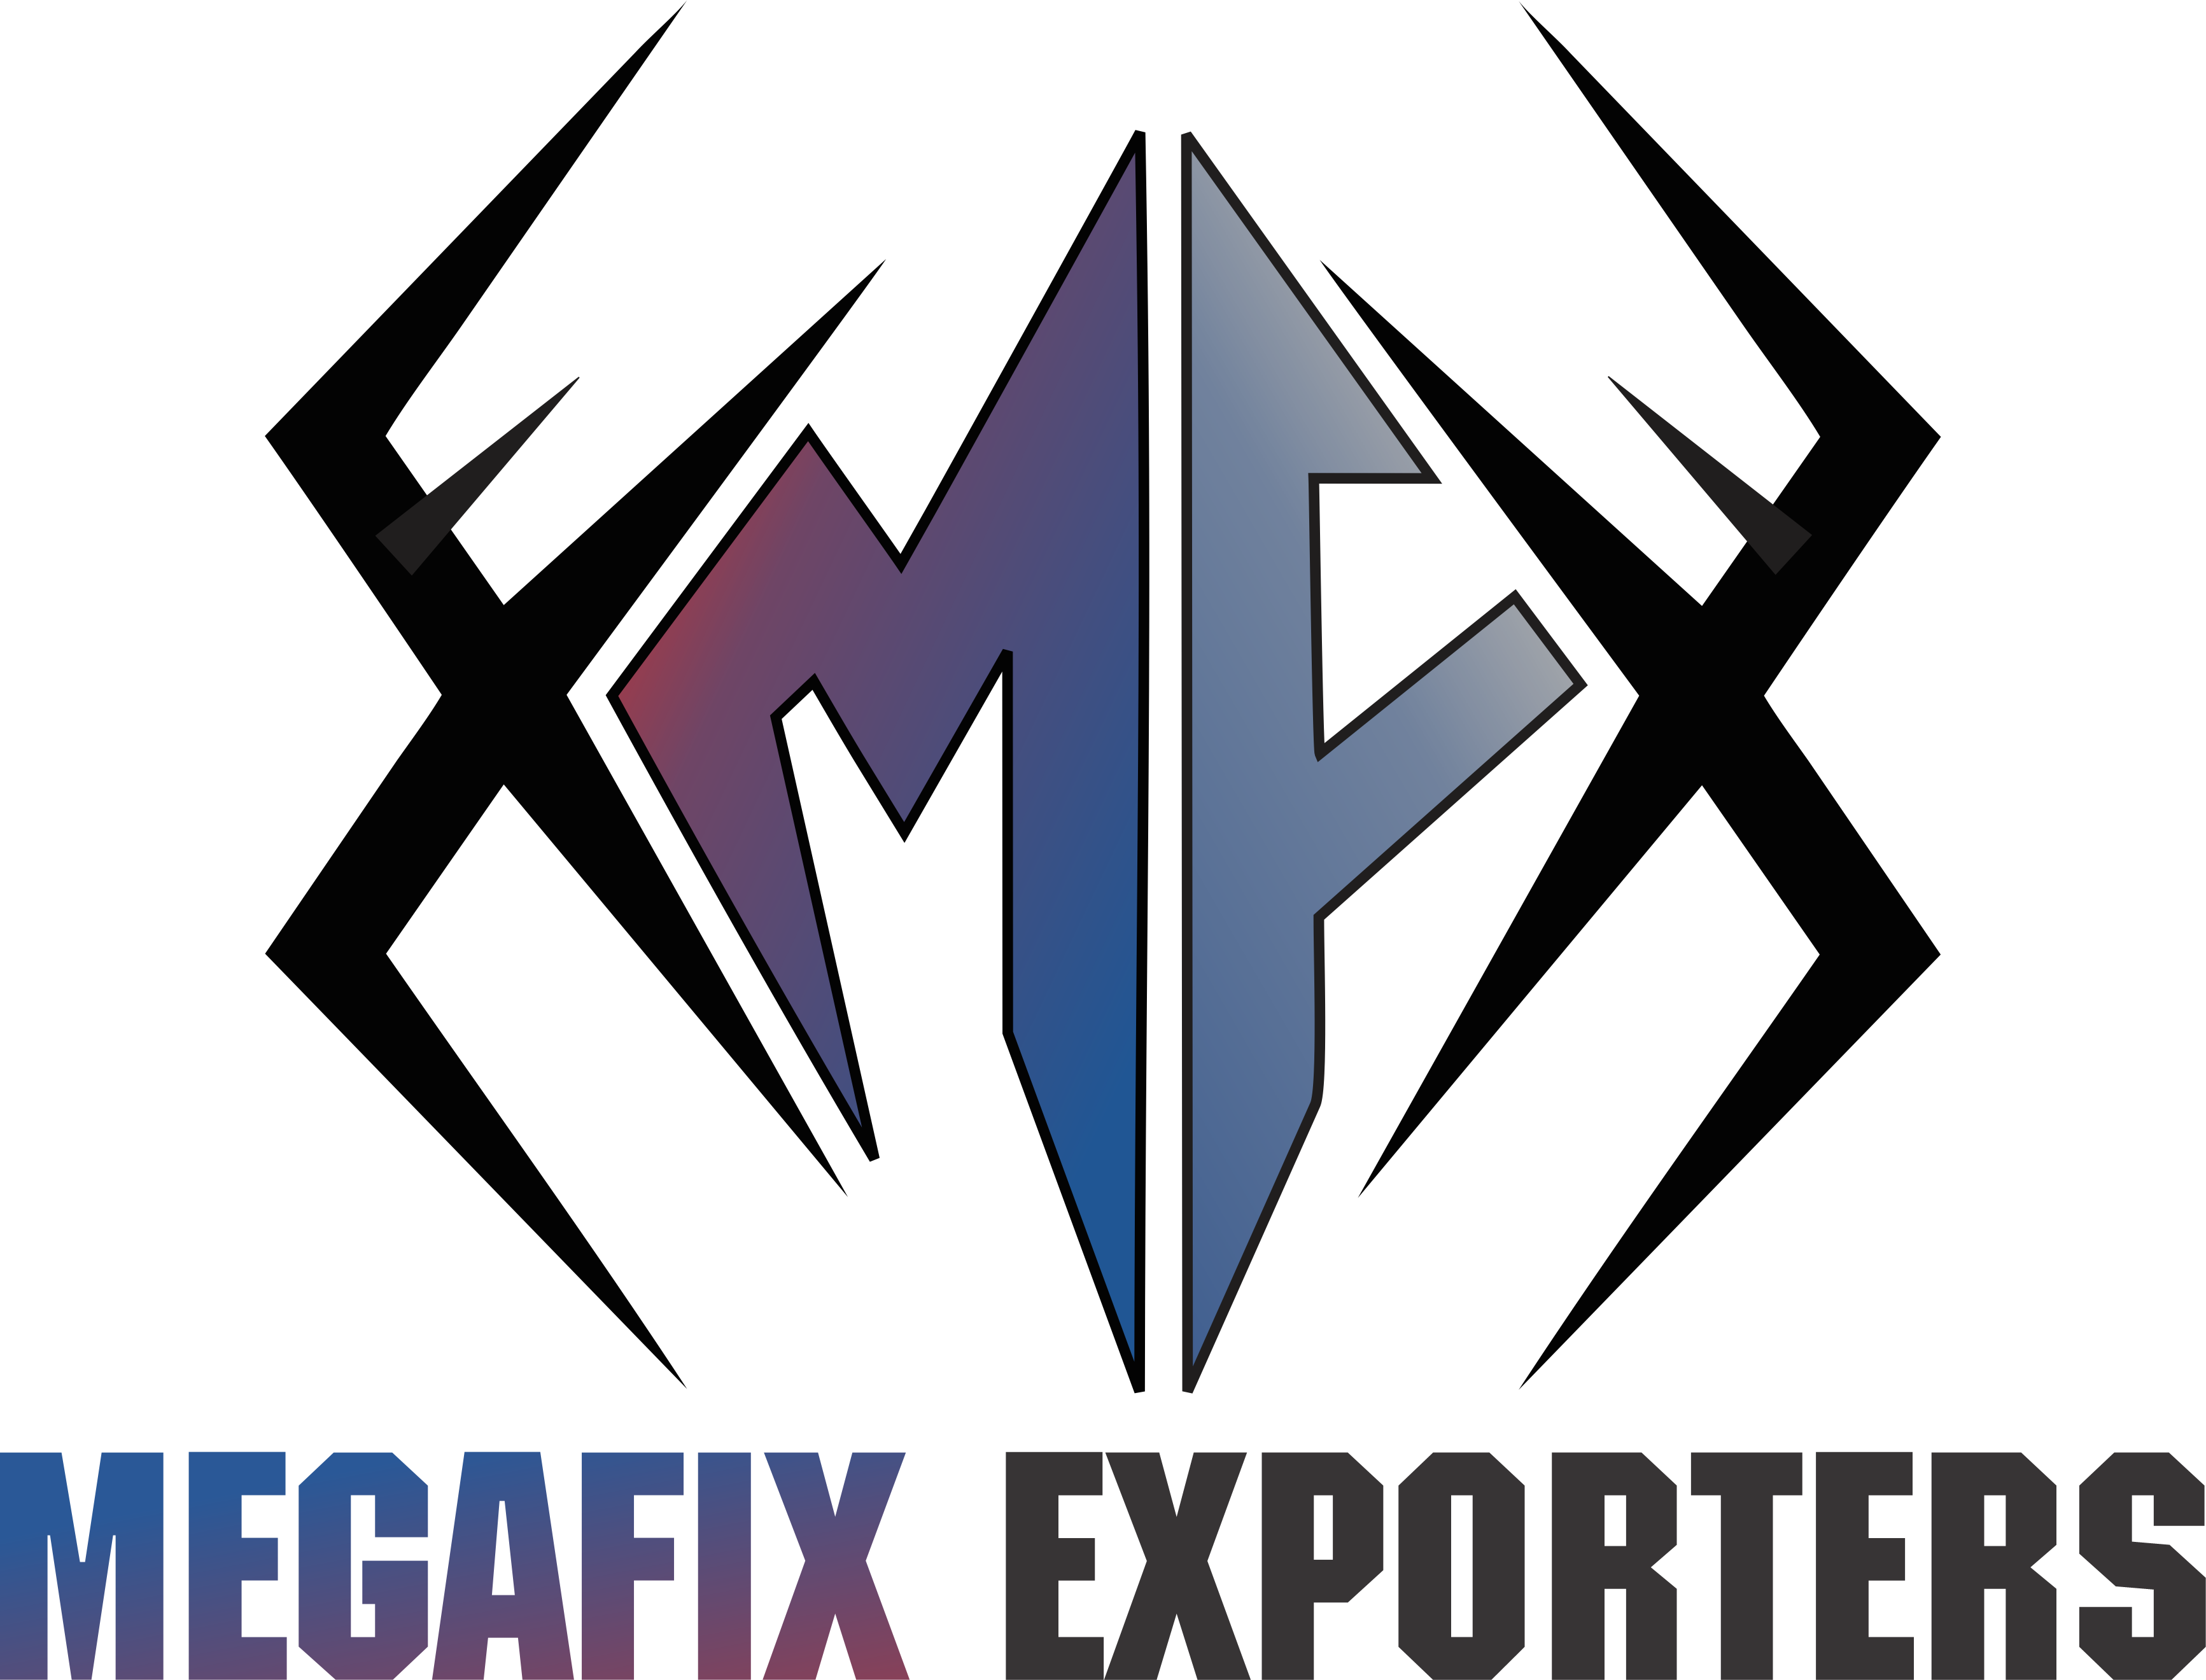 MegaFix Exporters